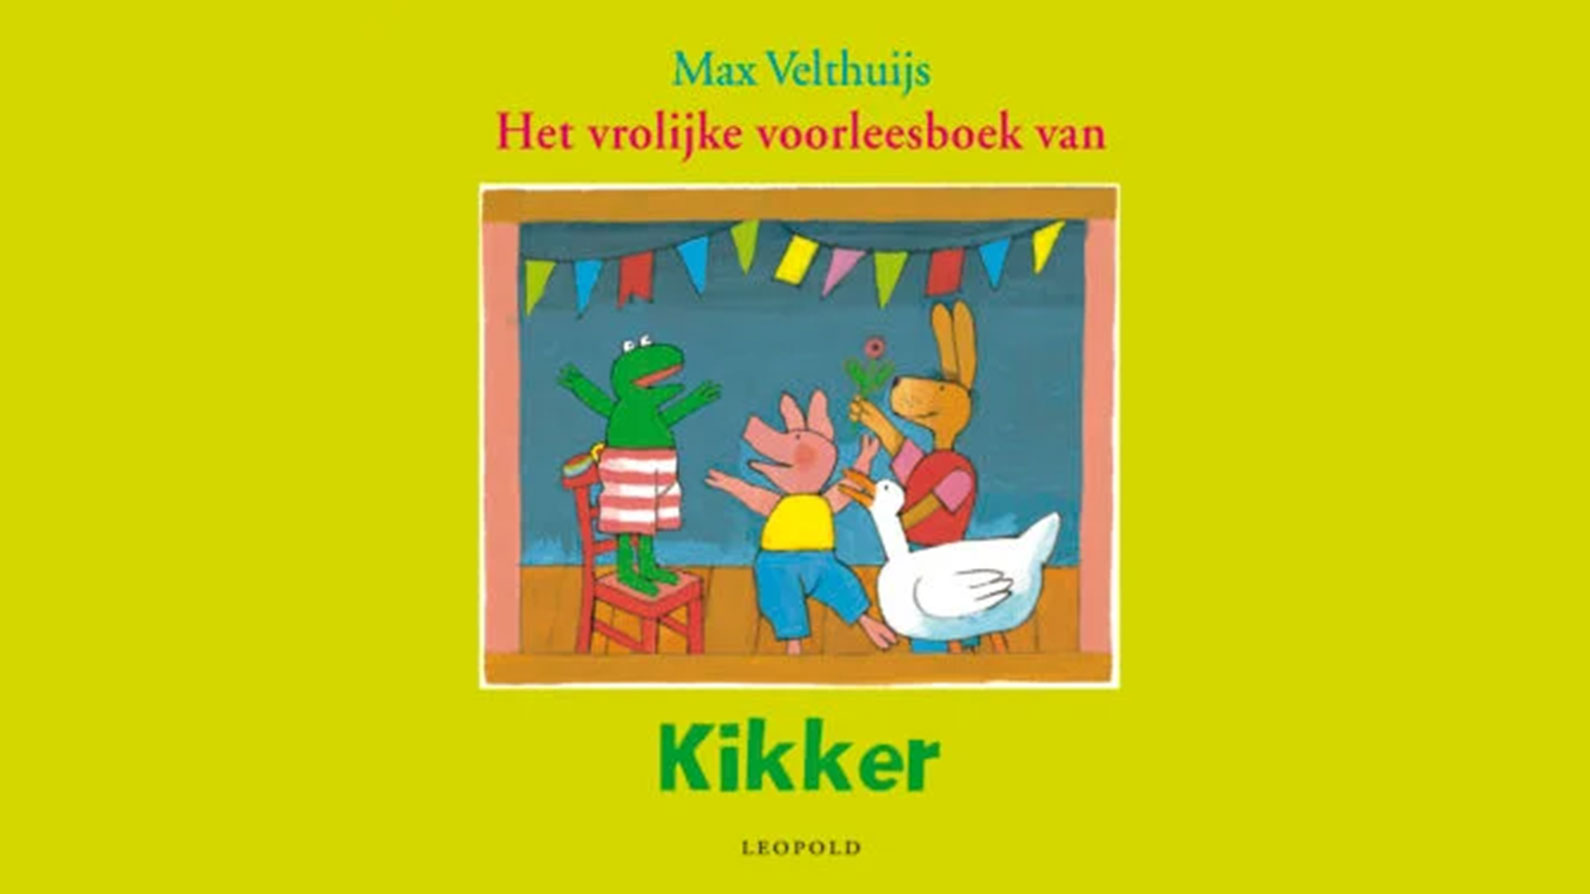 Het vrolijke voorleesboek van Kikker van Max Velthuijs kaft varkentje haas rat eend feestje kinderboek